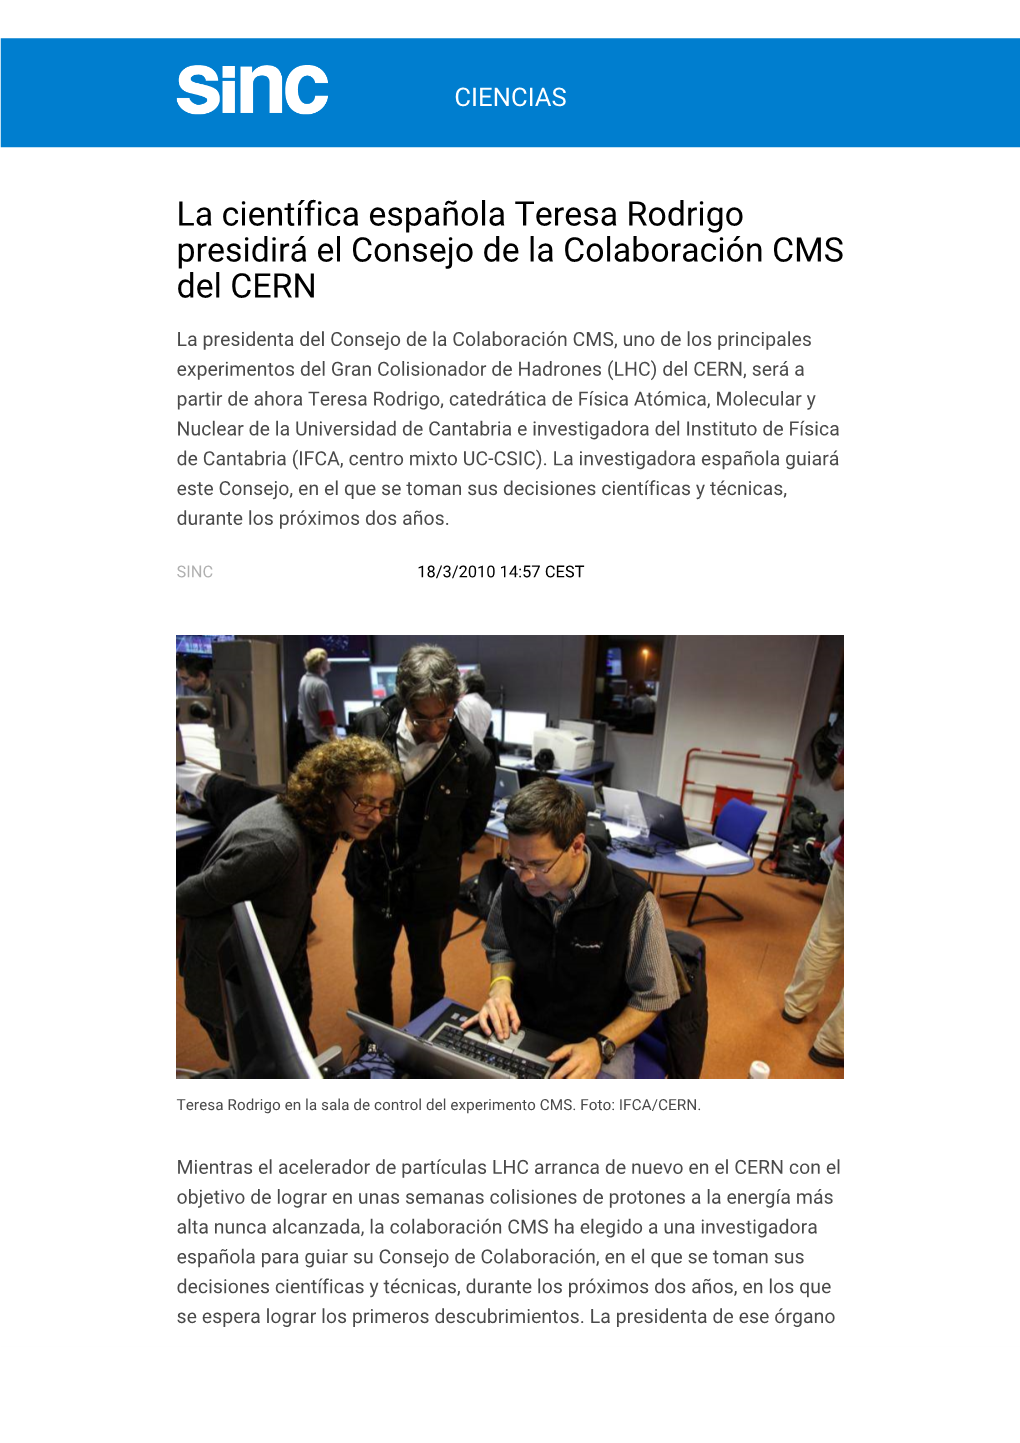 La Científica Española Teresa Rodrigo Presidirá El Consejo De La Colaboración CMS Del CERN